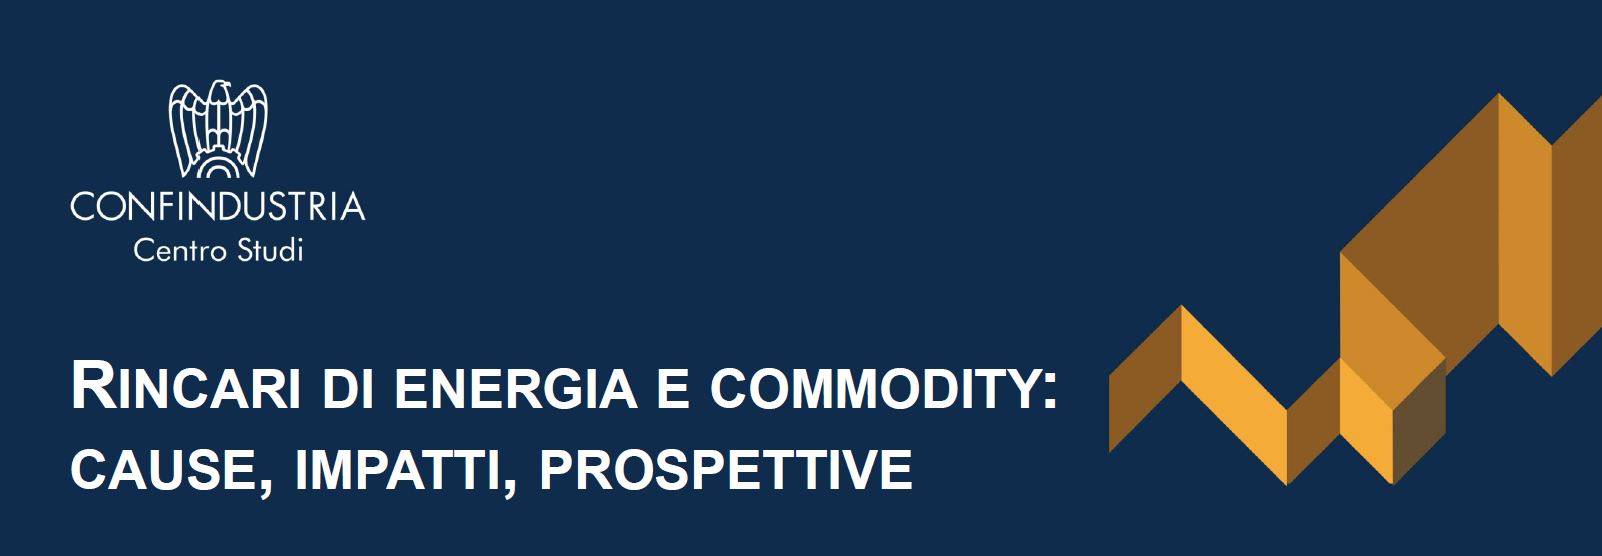 Centro Studi Confindustria: rincari di energia e commodity: cause, impatti, prospettive